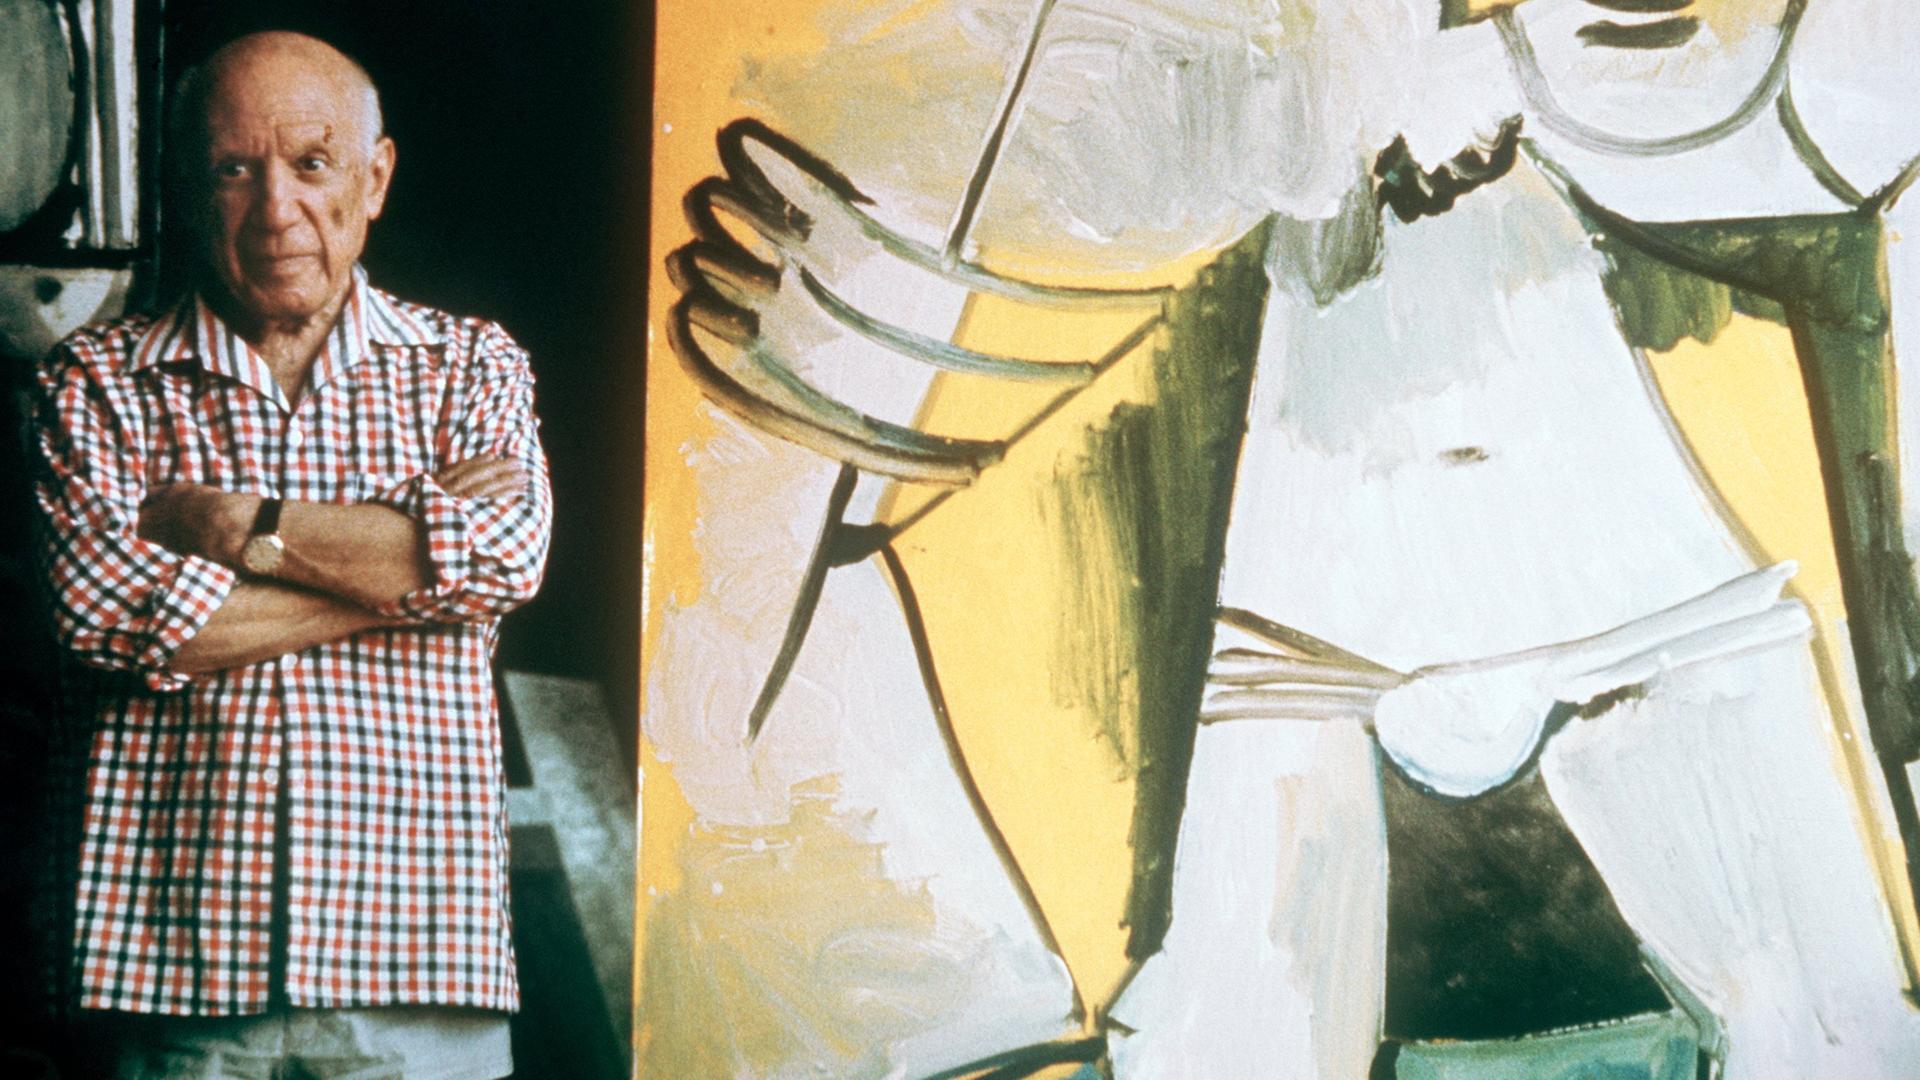 Der wohl berühmteste Künstler des 20. Jahrhunderts (undatierte Aufnahme). Pablo Picasso, der wandlungsfähige Maler, Graphiker und Bildhauer wurde am 25. Oktober 1881 in Malaga im spanischen Andalusien geboren und ist am 8. April 1973 in Mougins bei Cannes (Frankreich) gestorben.